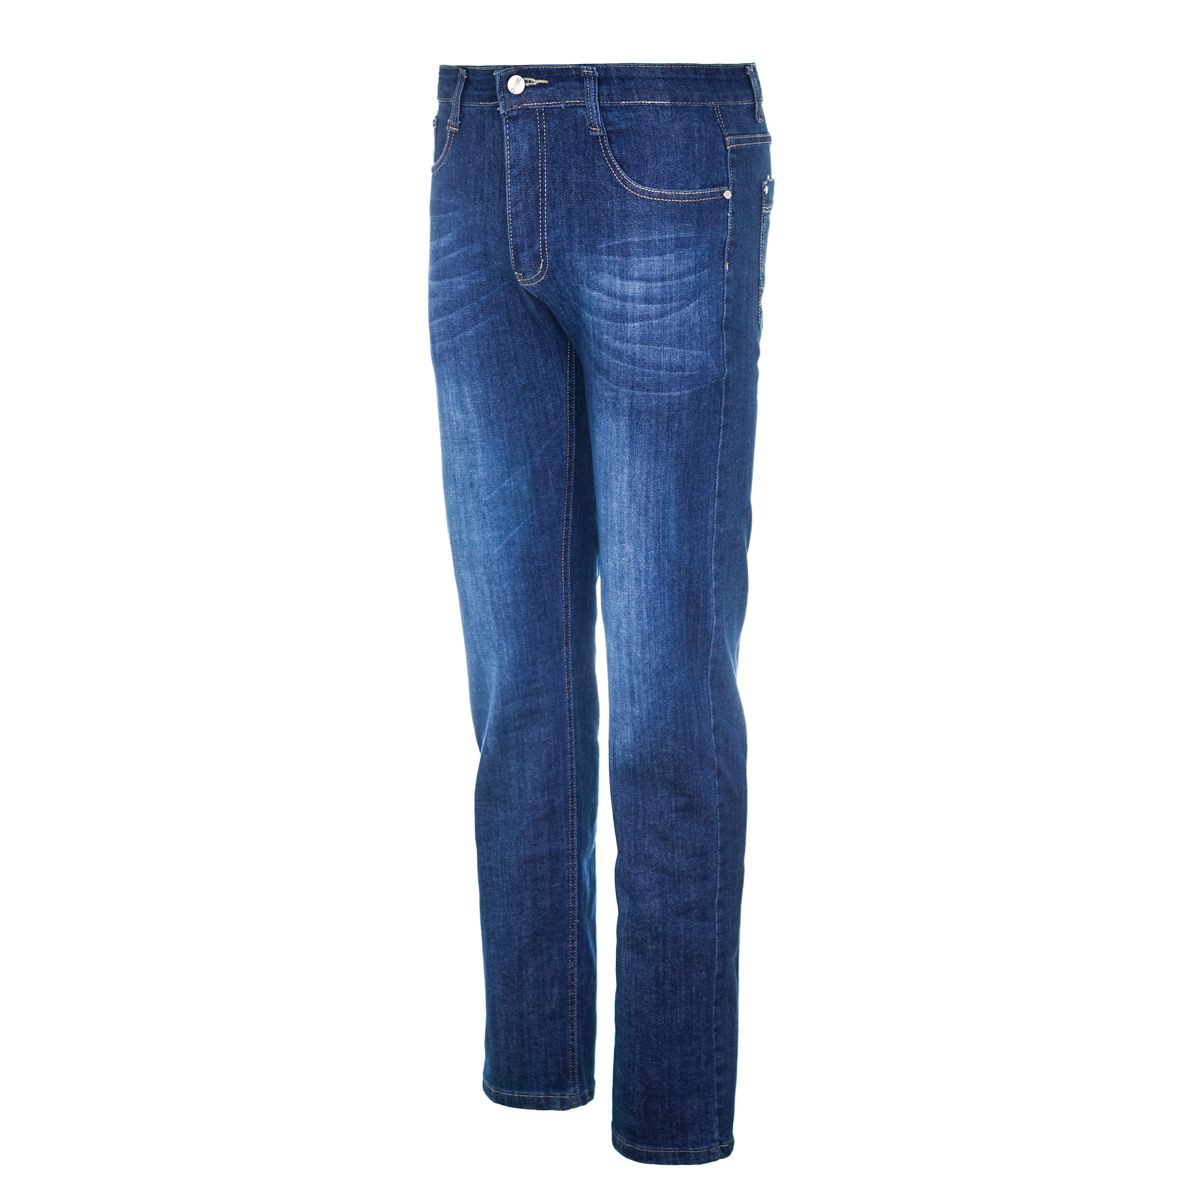 Муж. джинсы арт. 12-0094 Синий р. 31 Китай, размер 31 - фото 2